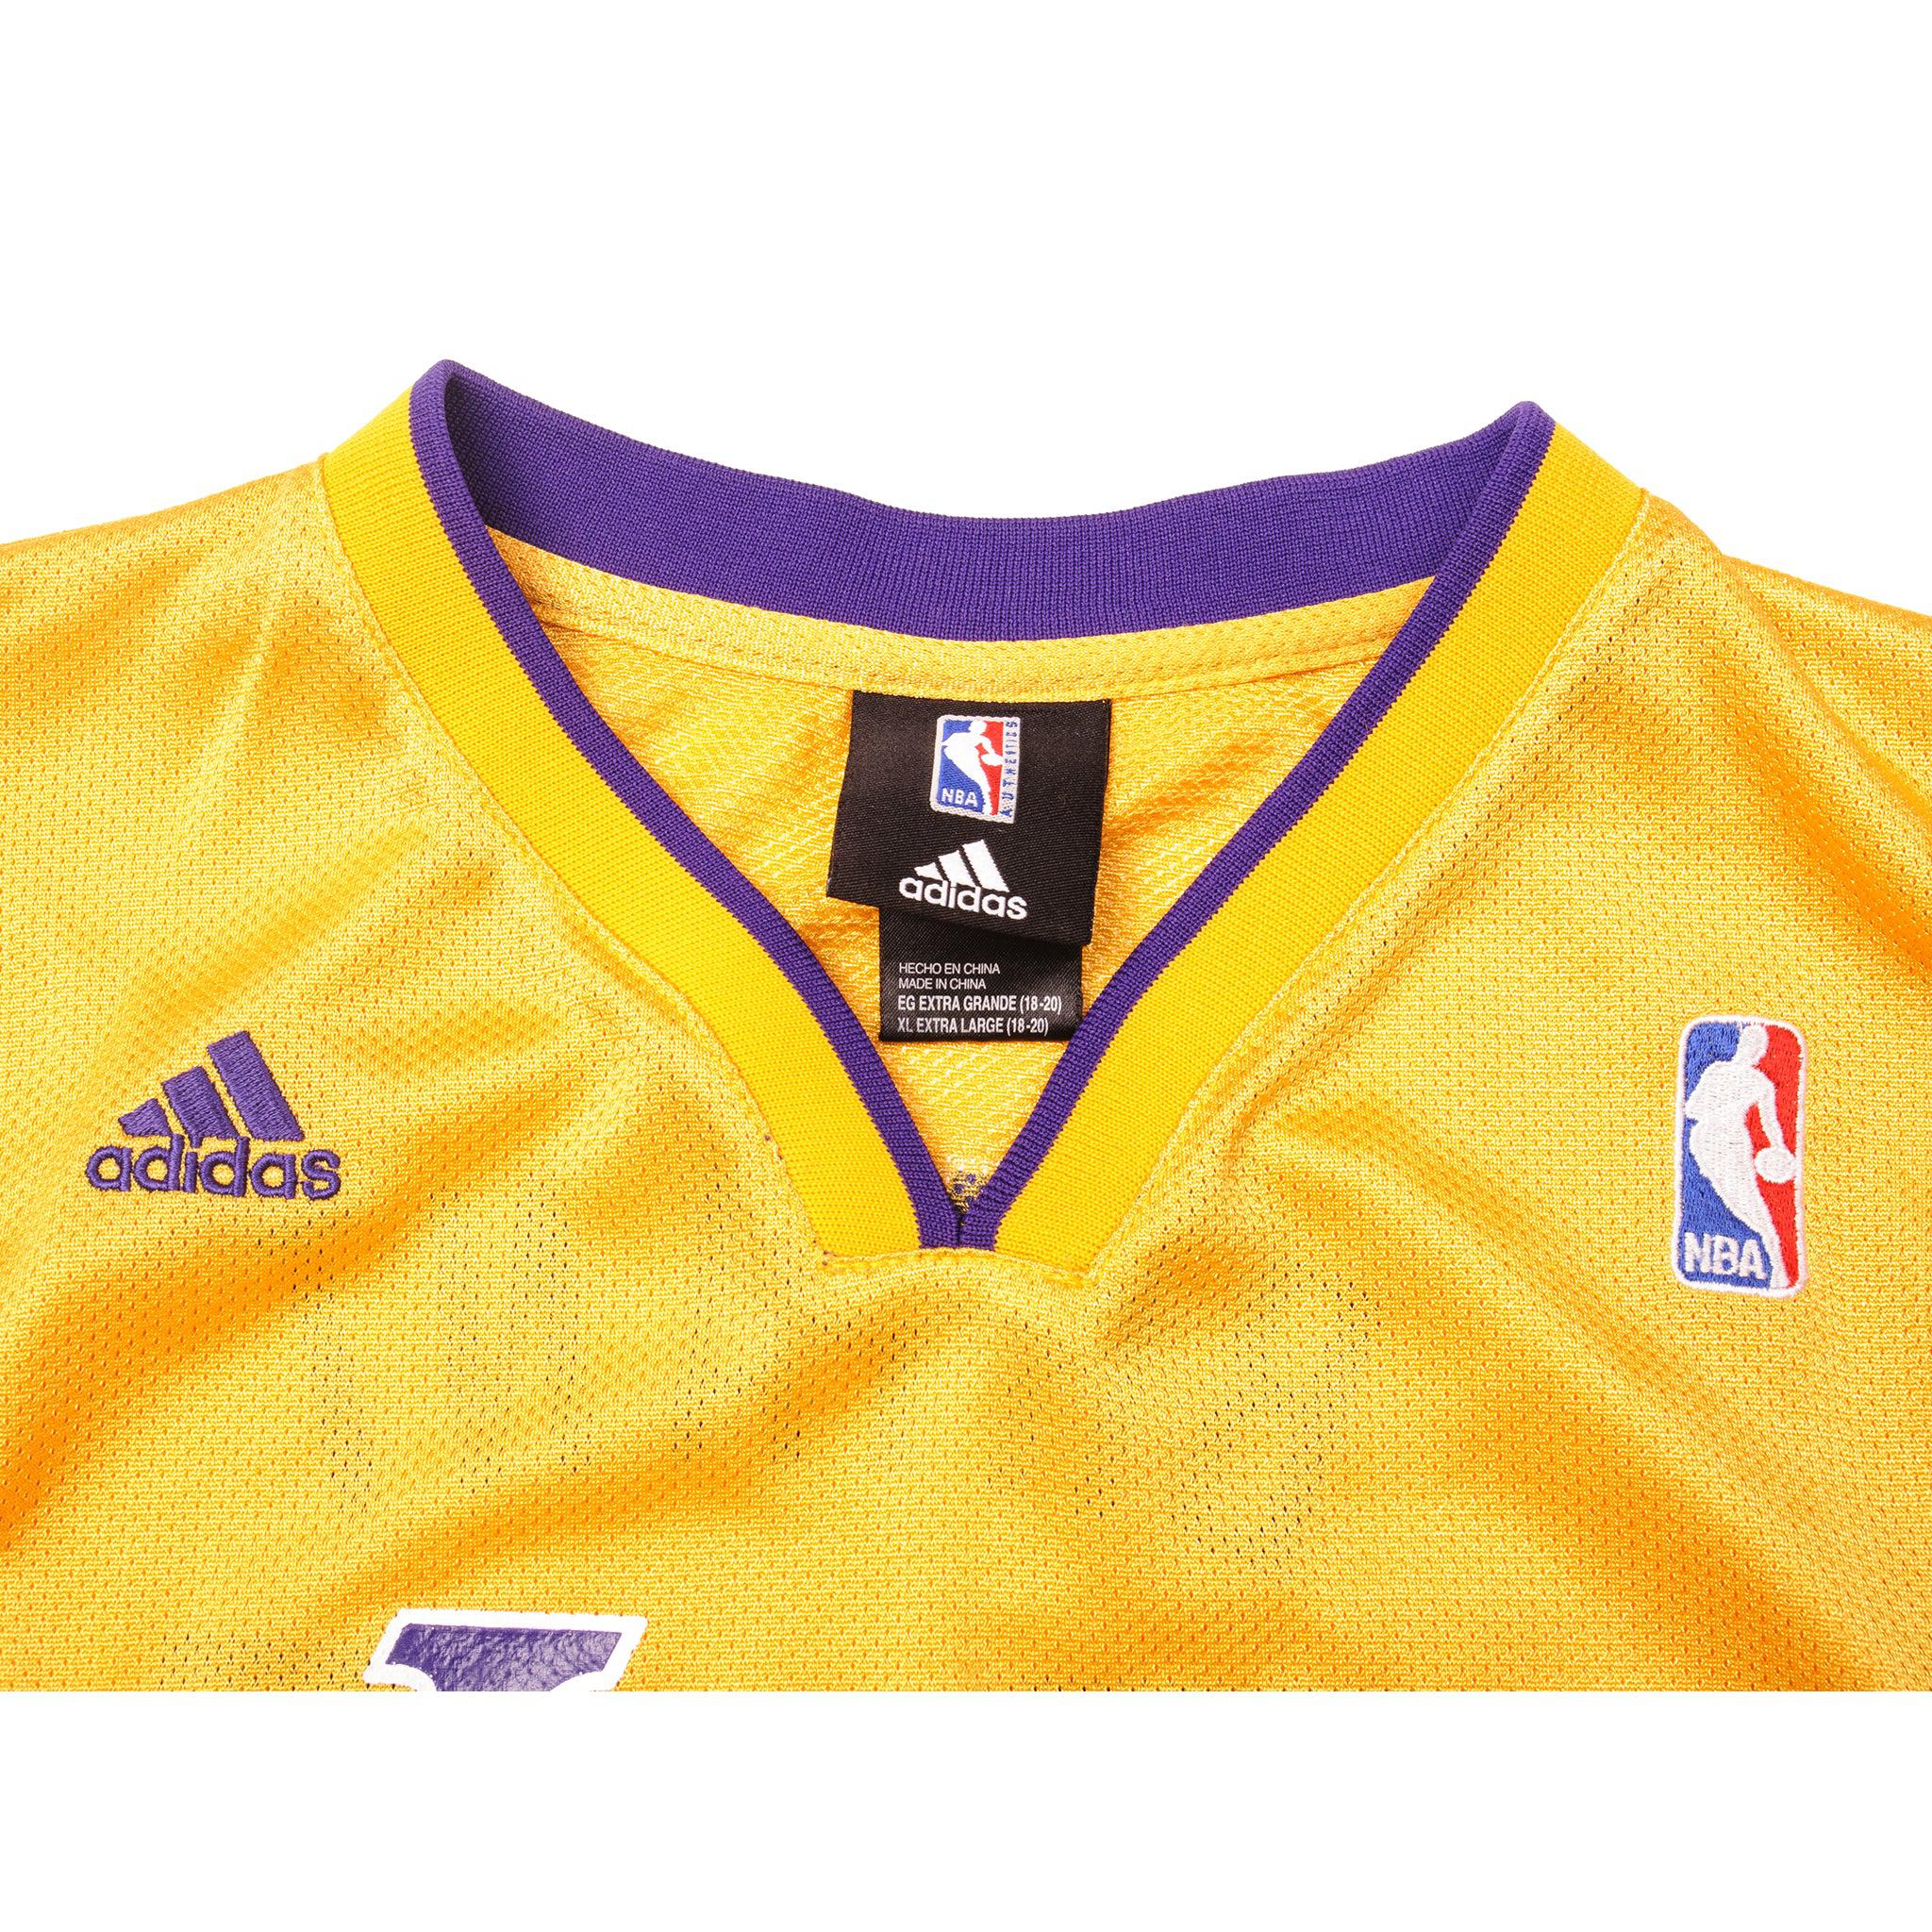 Adidas NBA Los Angeles LA Lakers Jersey Kobe Bryant #24 Men's Size 2XL